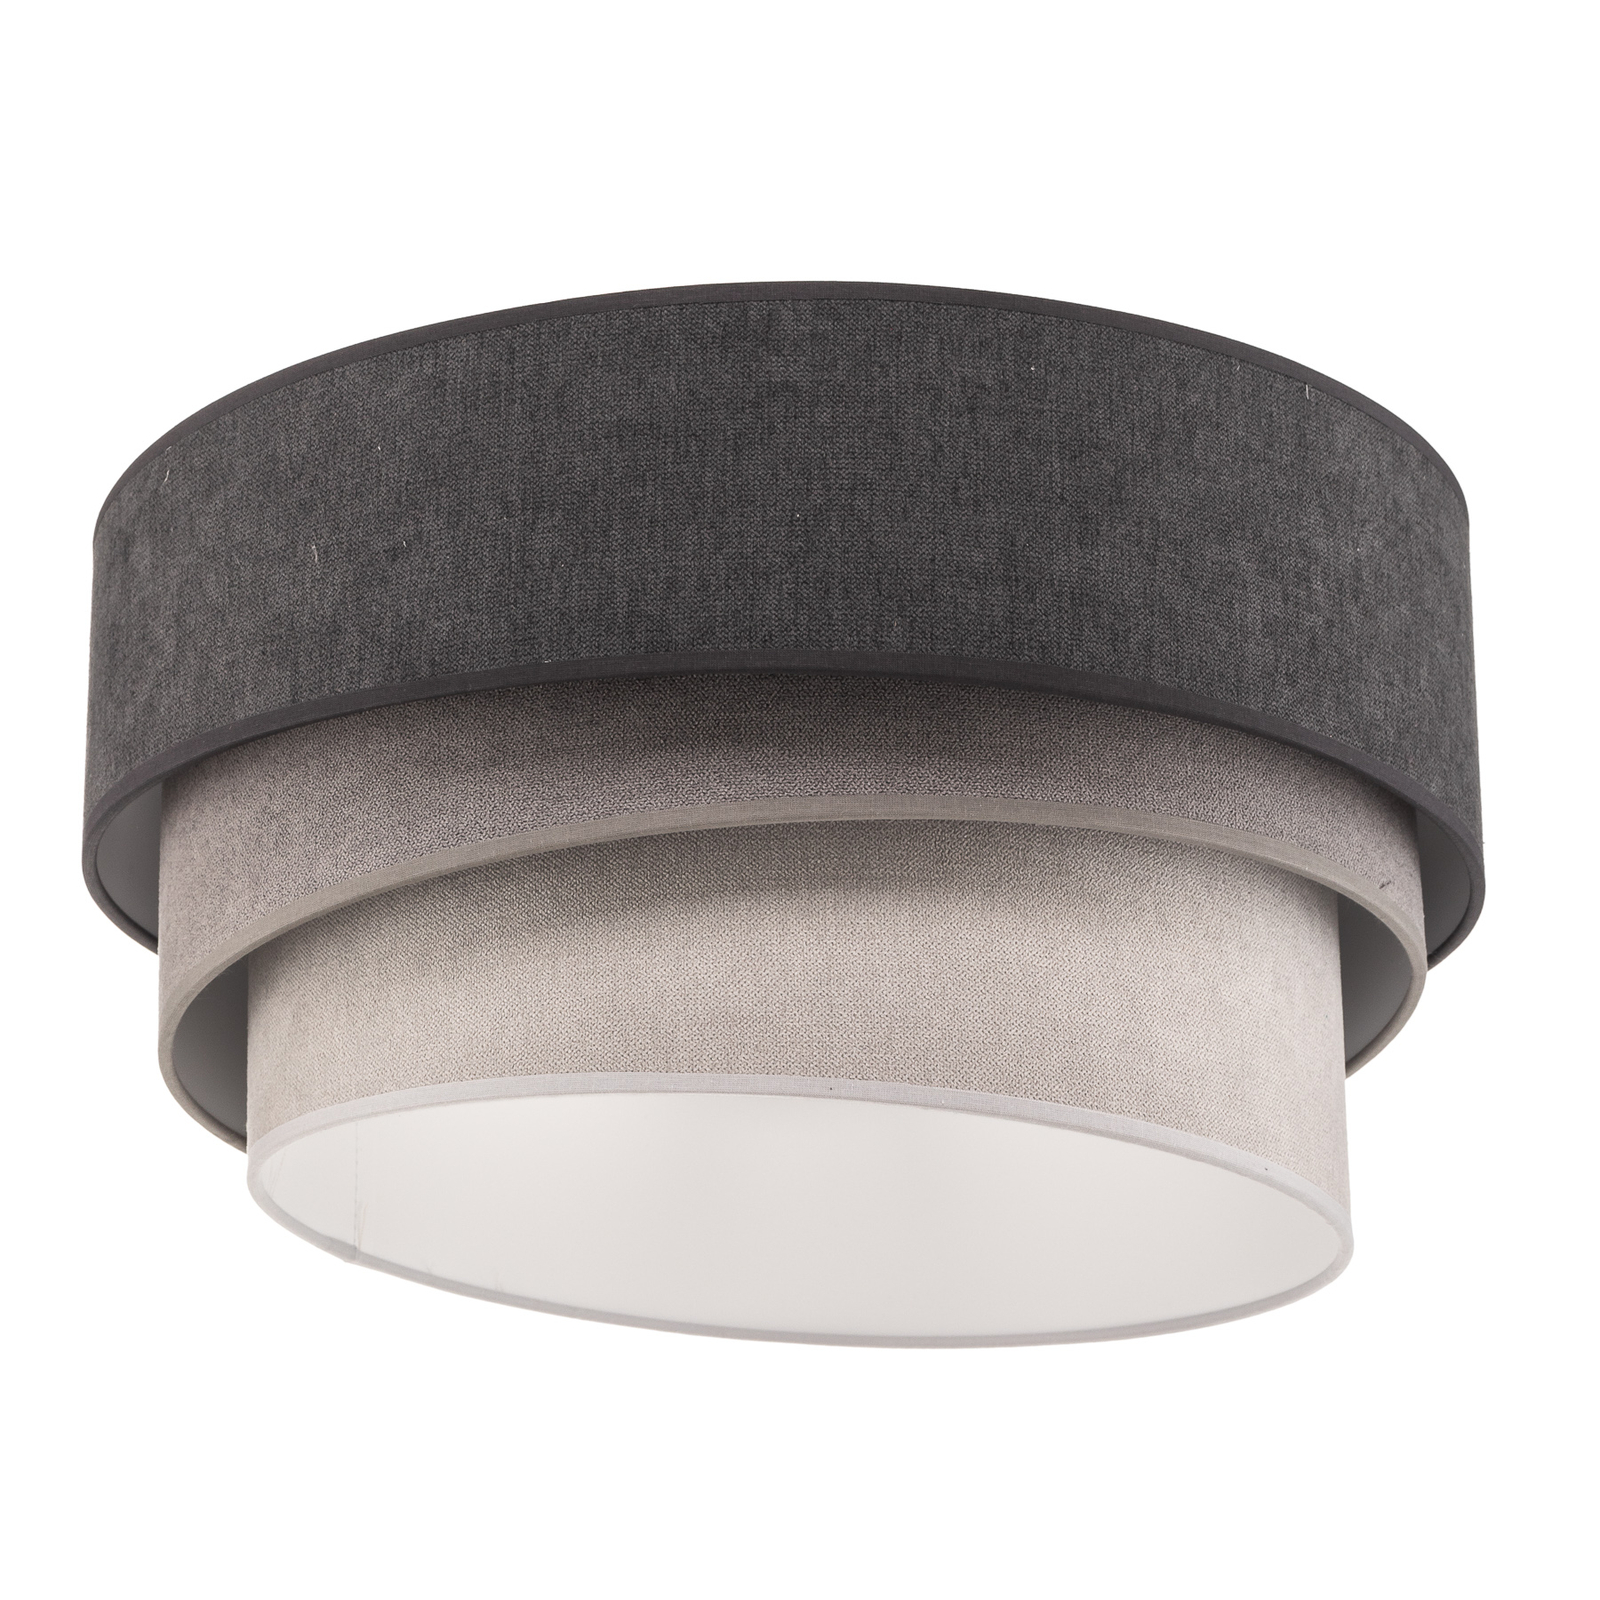 Pastell Trio ceiling lamp Ø 45cm in 3 grey tones